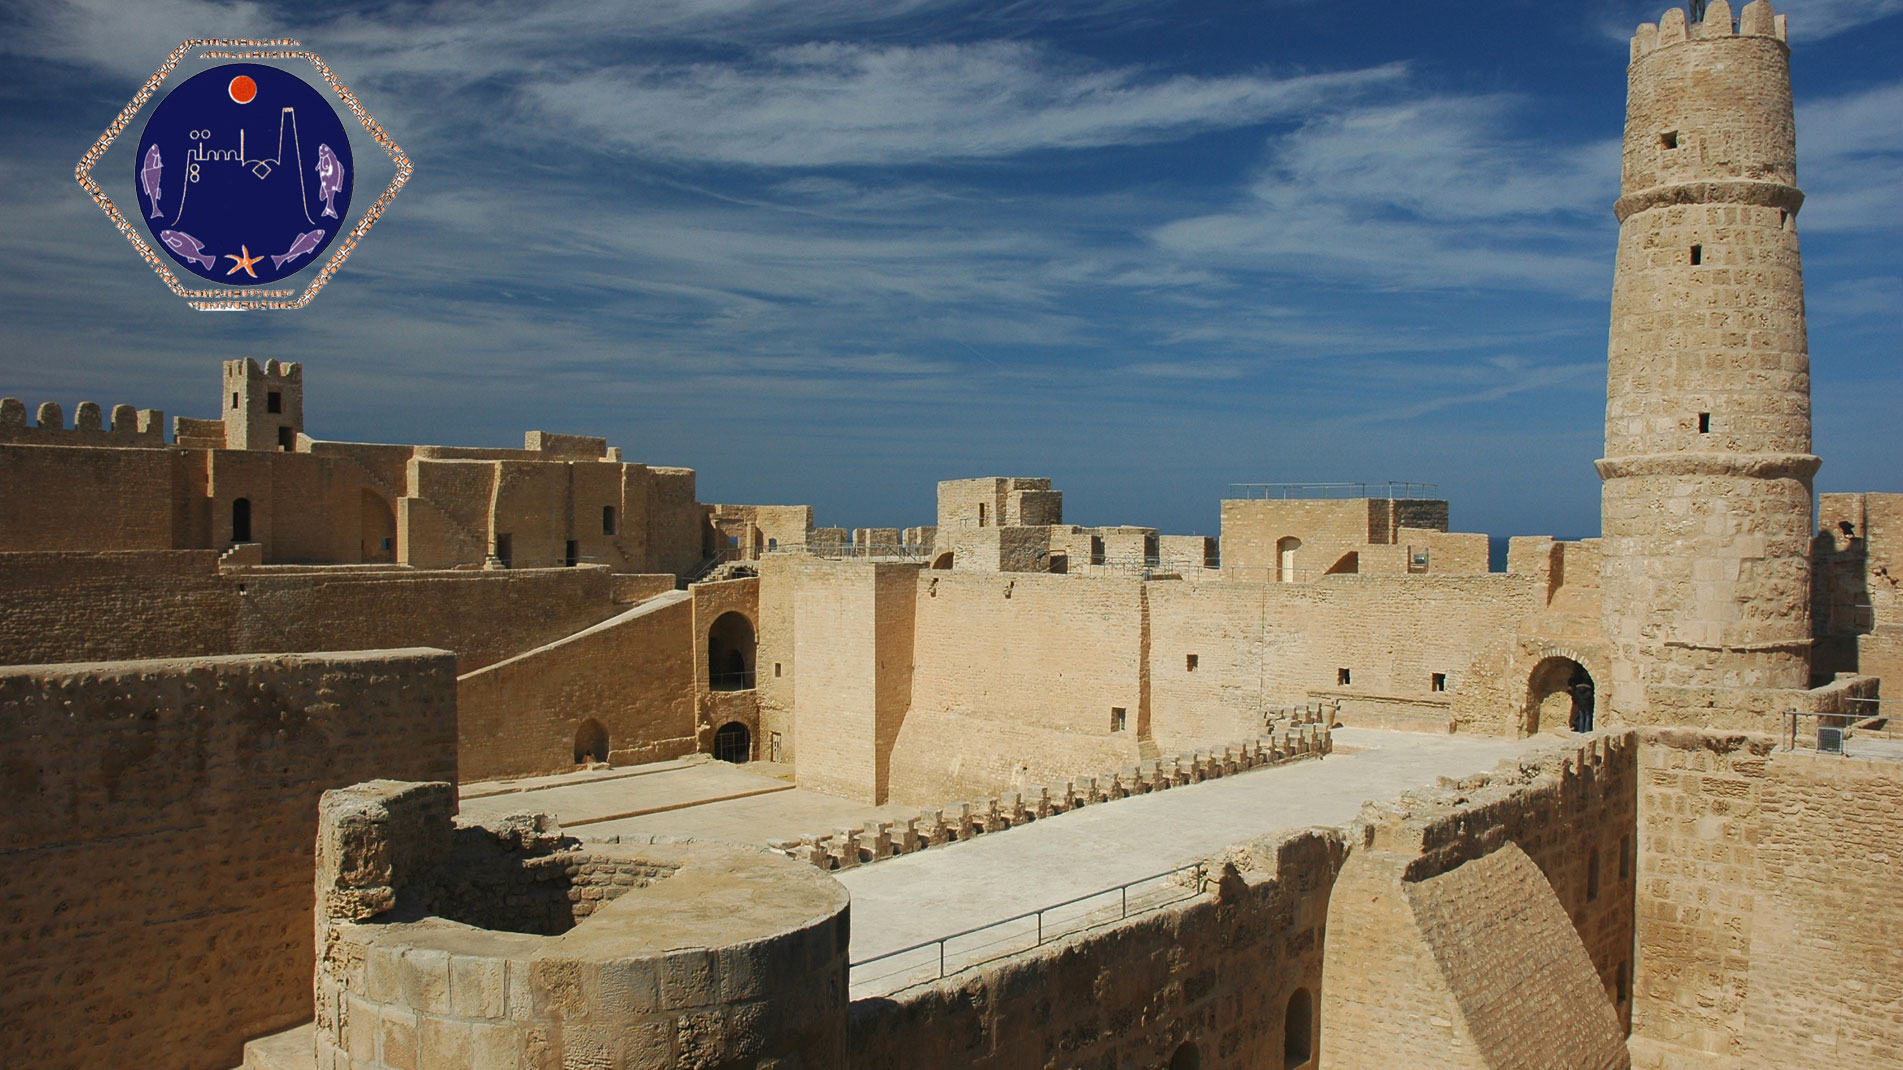 L'imposante forteresse tunisienne située au bord de la mer Méditerranée